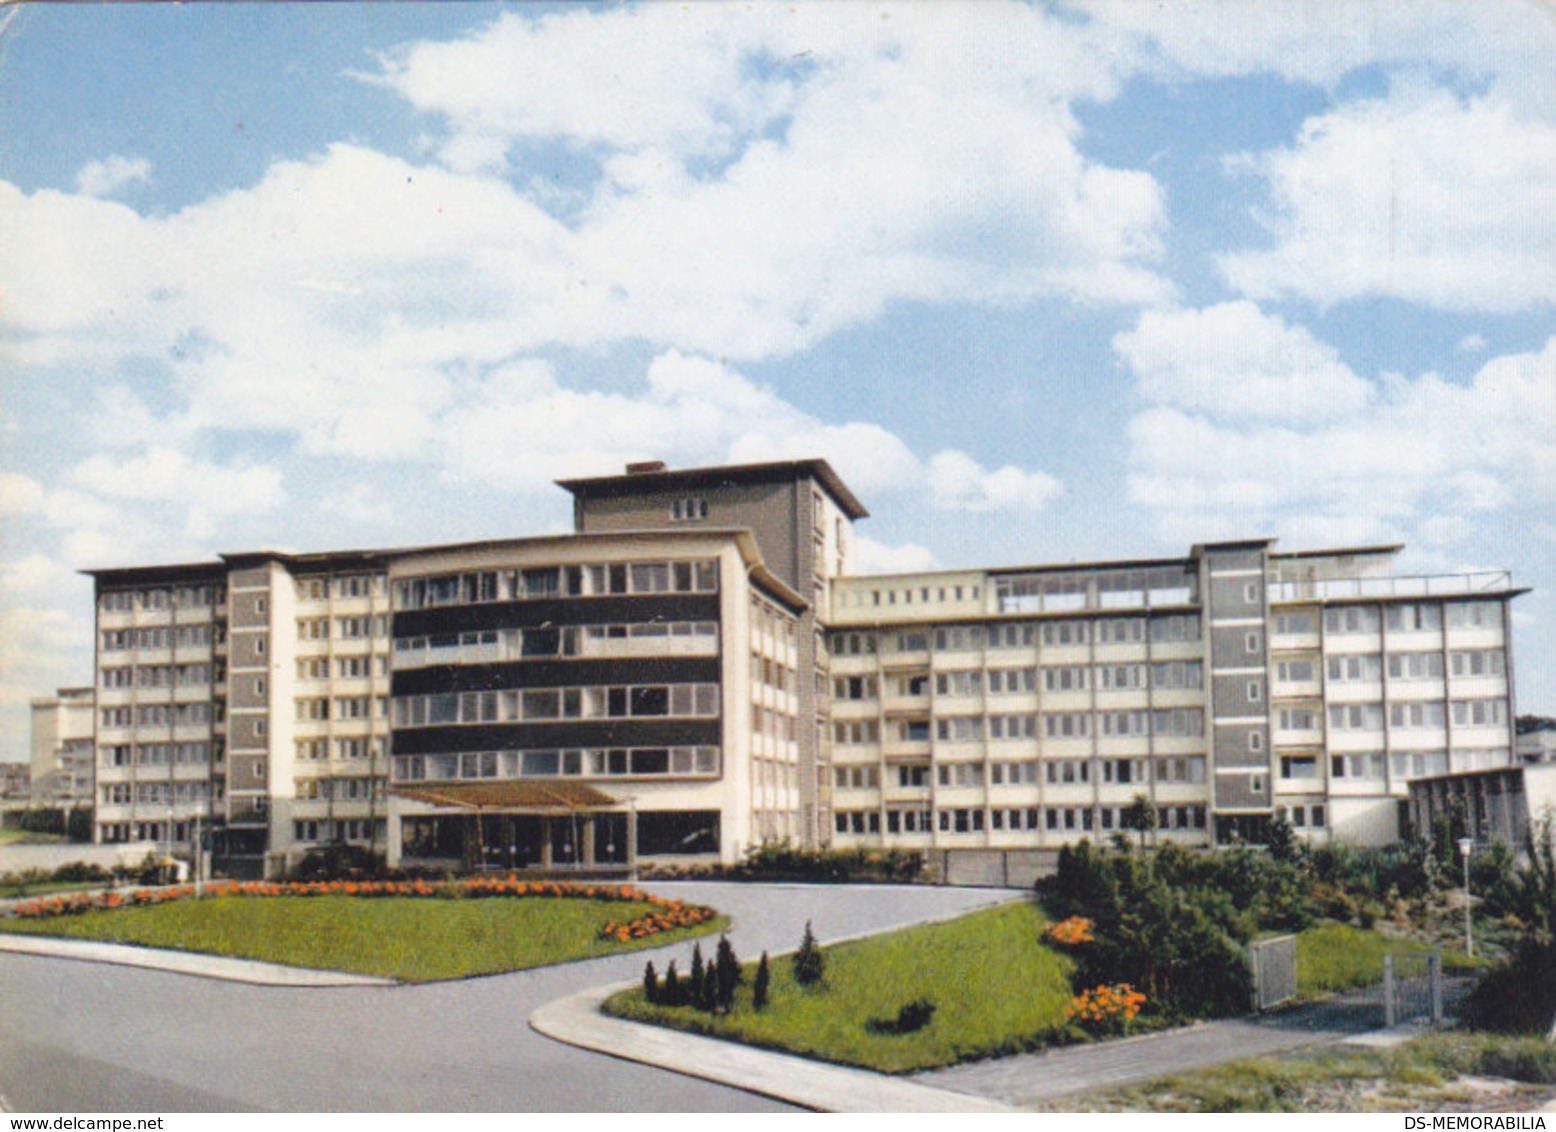 Offenbach - Ketteler Krankenhaus 1970 - Offenbach